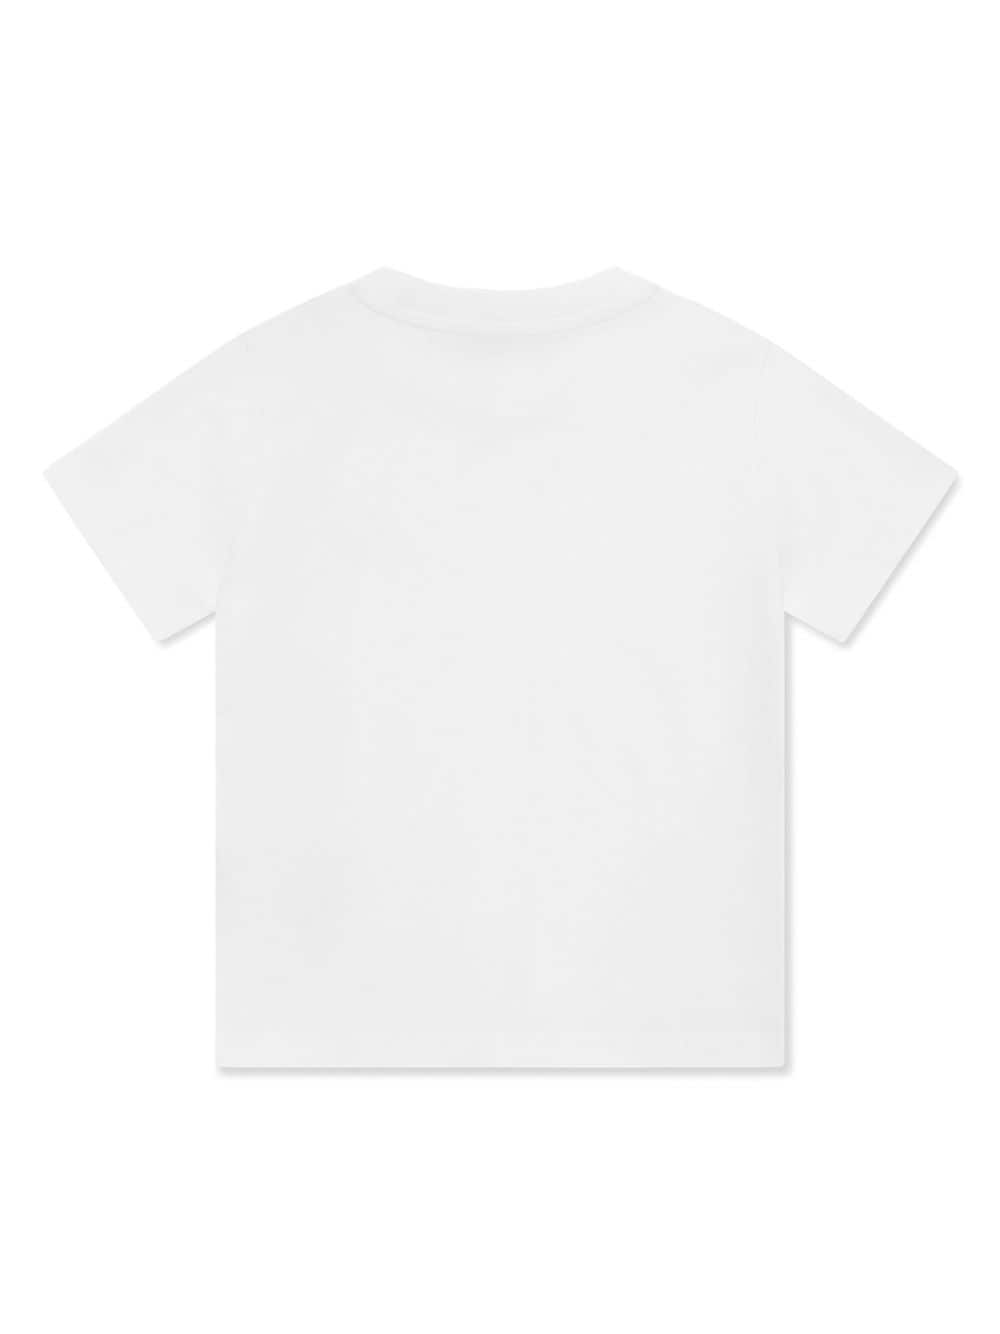 T-shirt per bambino in cotone bianca